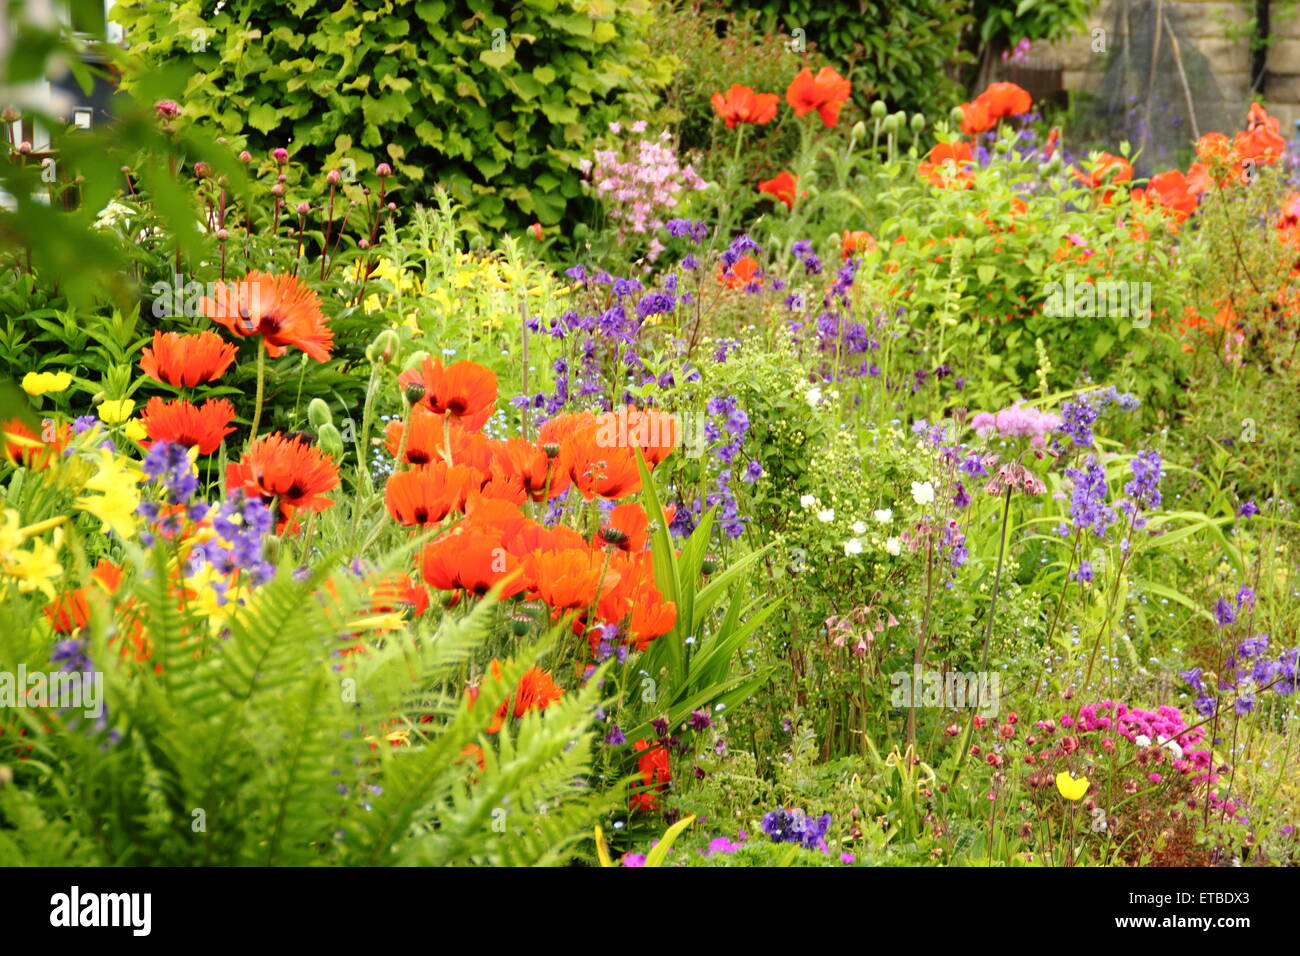 Un cottage anglais jardin border ponctuées par des coquelicots, aquilegias oriental et de fougères sur une chaude journée ensoleillée, Angleterre Royaume-uni - Juin Banque D'Images